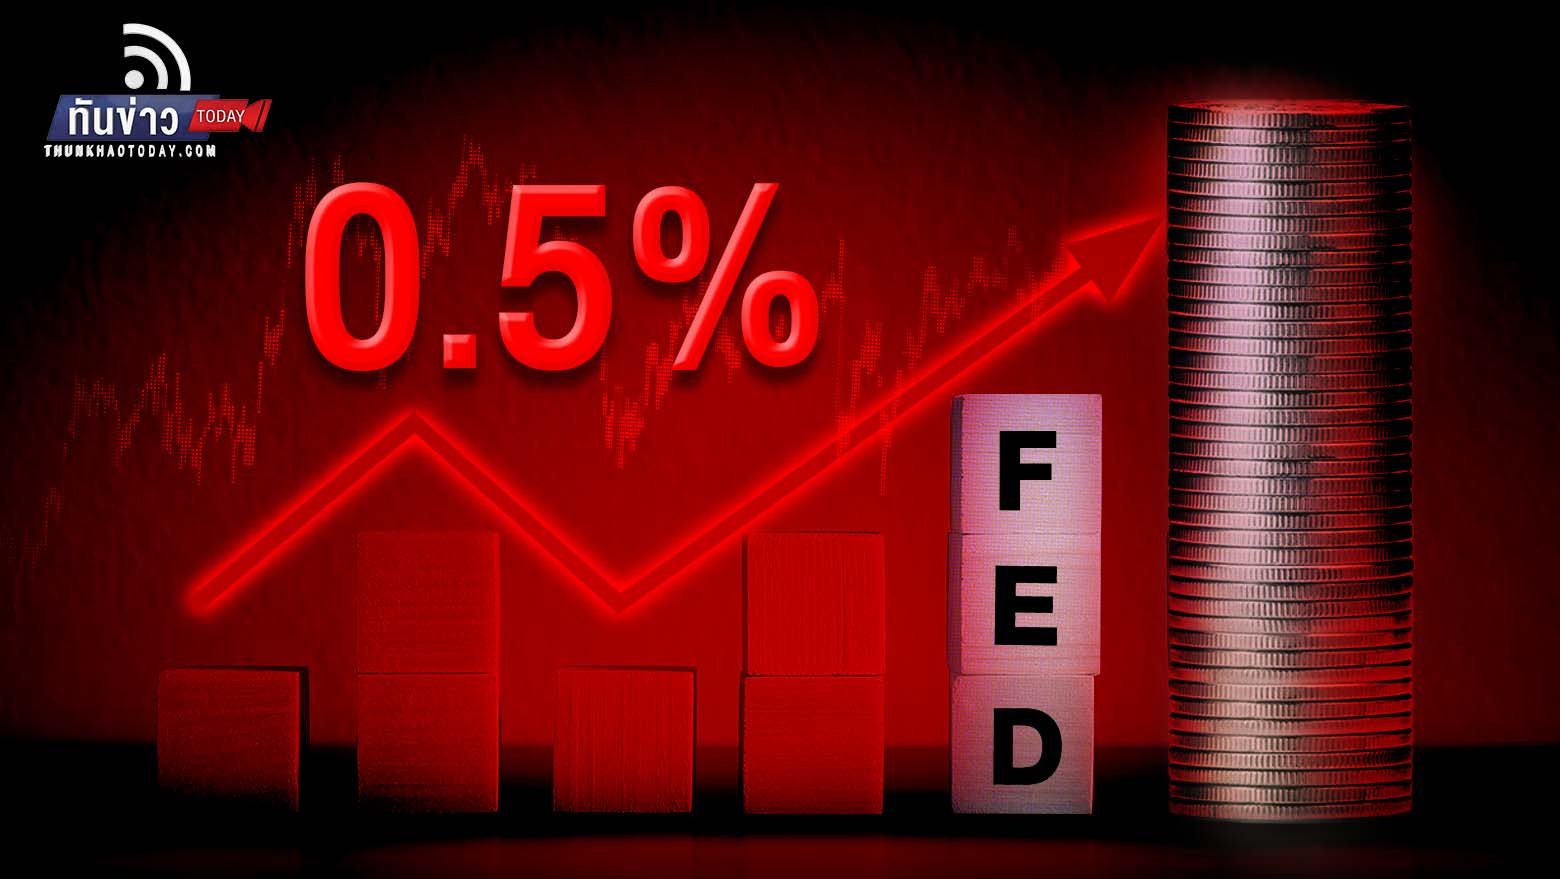 Fed ขึ้นดอกเบี้ยอีก 0.5% ส่งสัญญาณเดินหน้าขึ้นดอกเบี้ย สู่เป้าหมายเงินเฟ้อที่ 2%